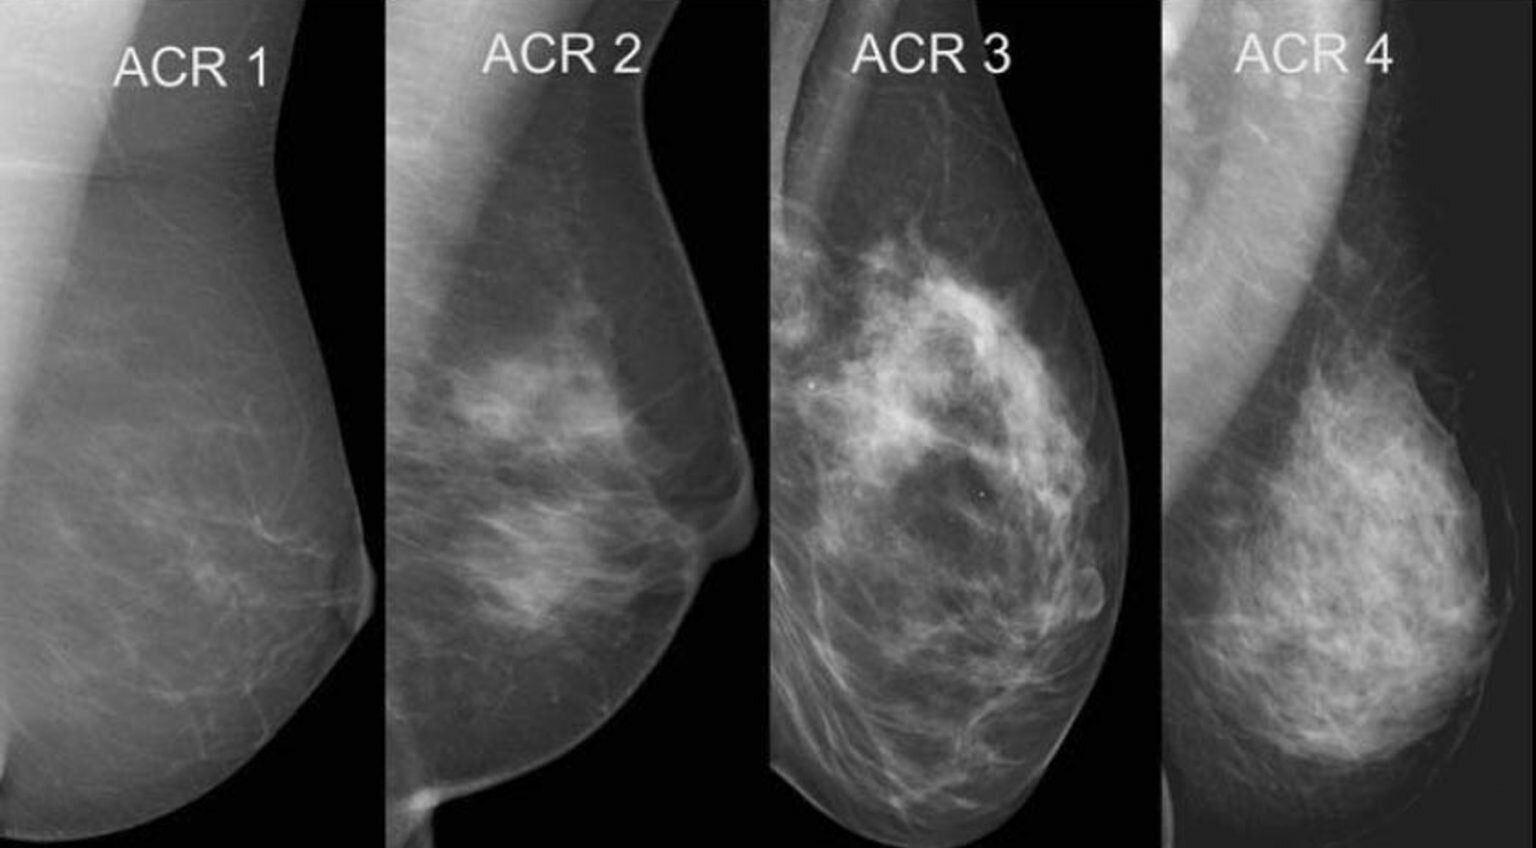 exame-de-tomossintese-e-eficaz-para-detectar-cancer-de-mama